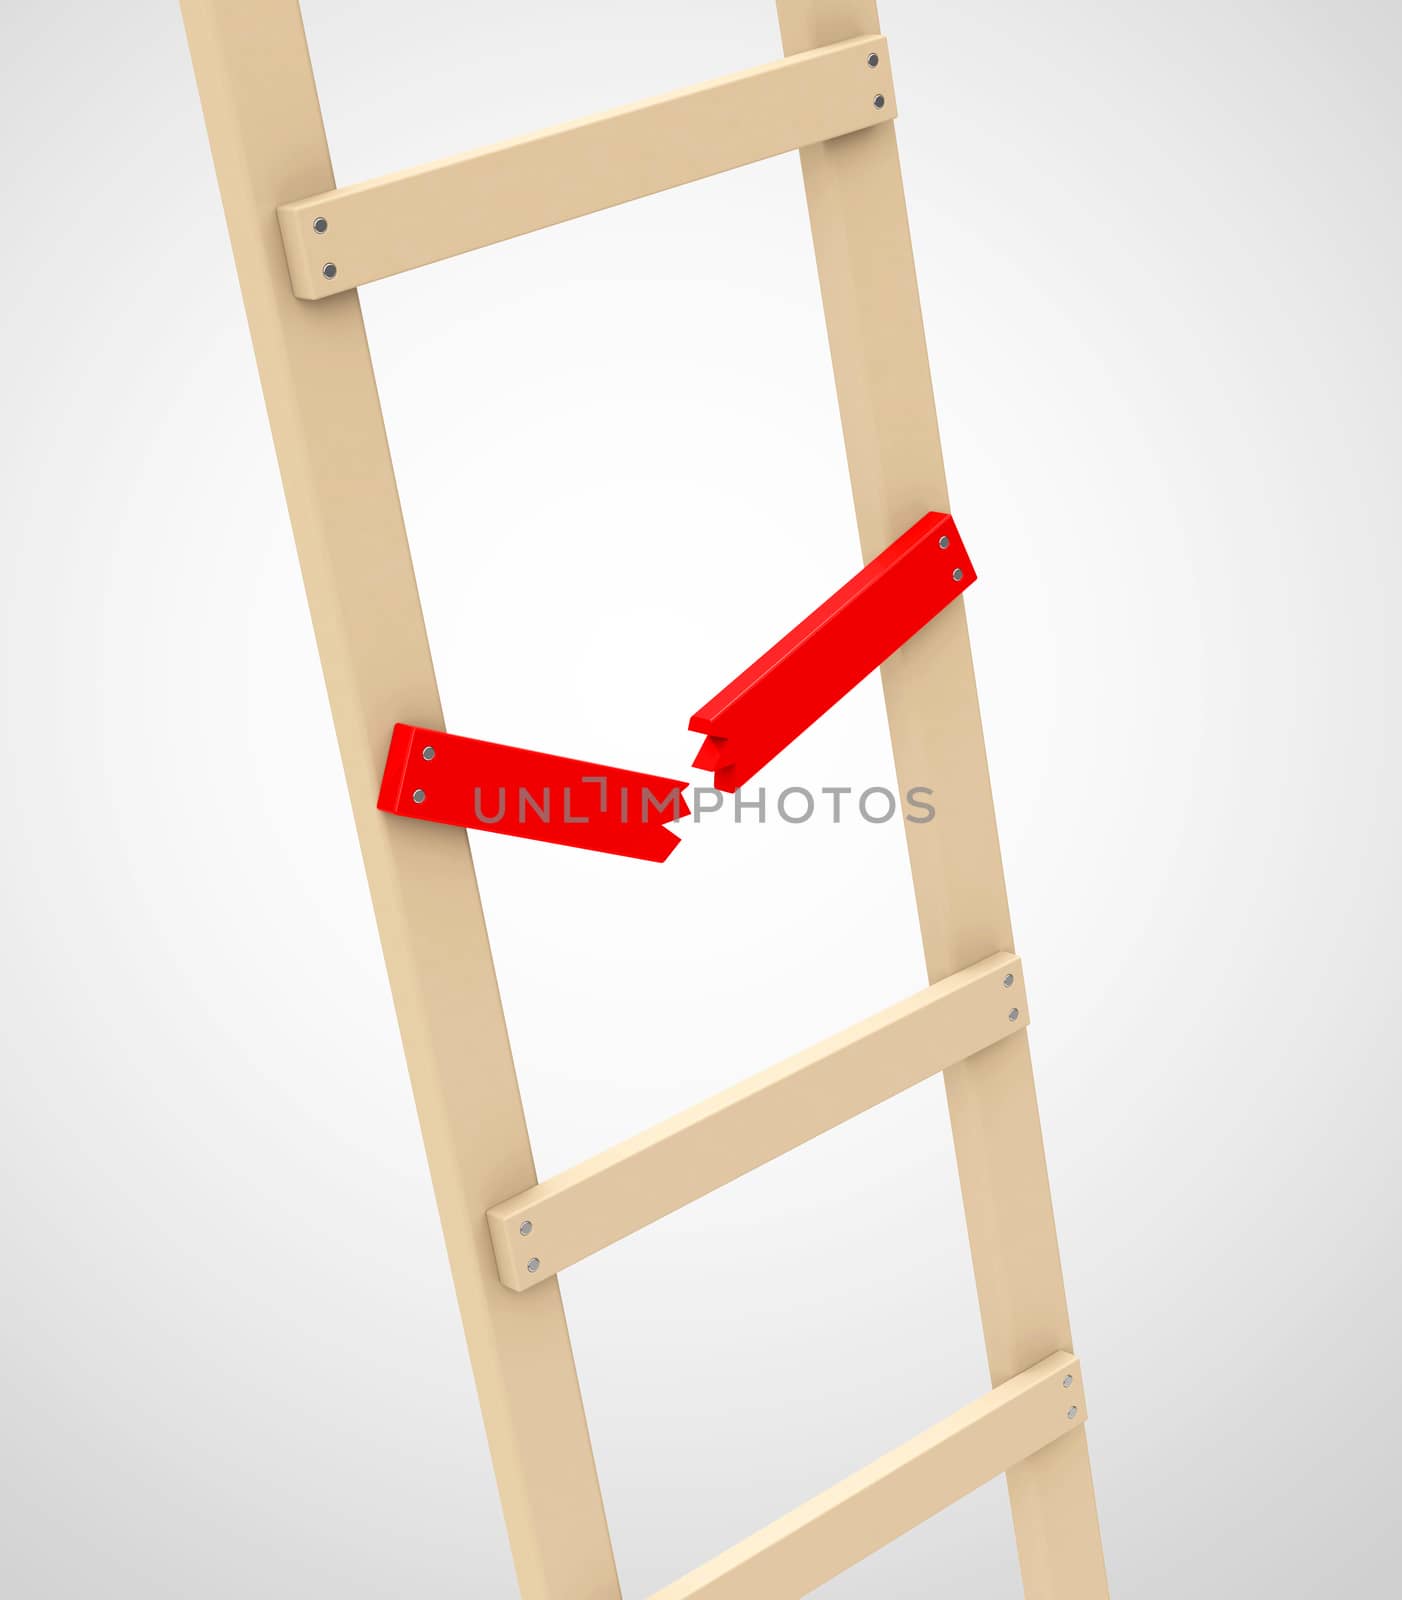 a broken rung on a wooden ladder